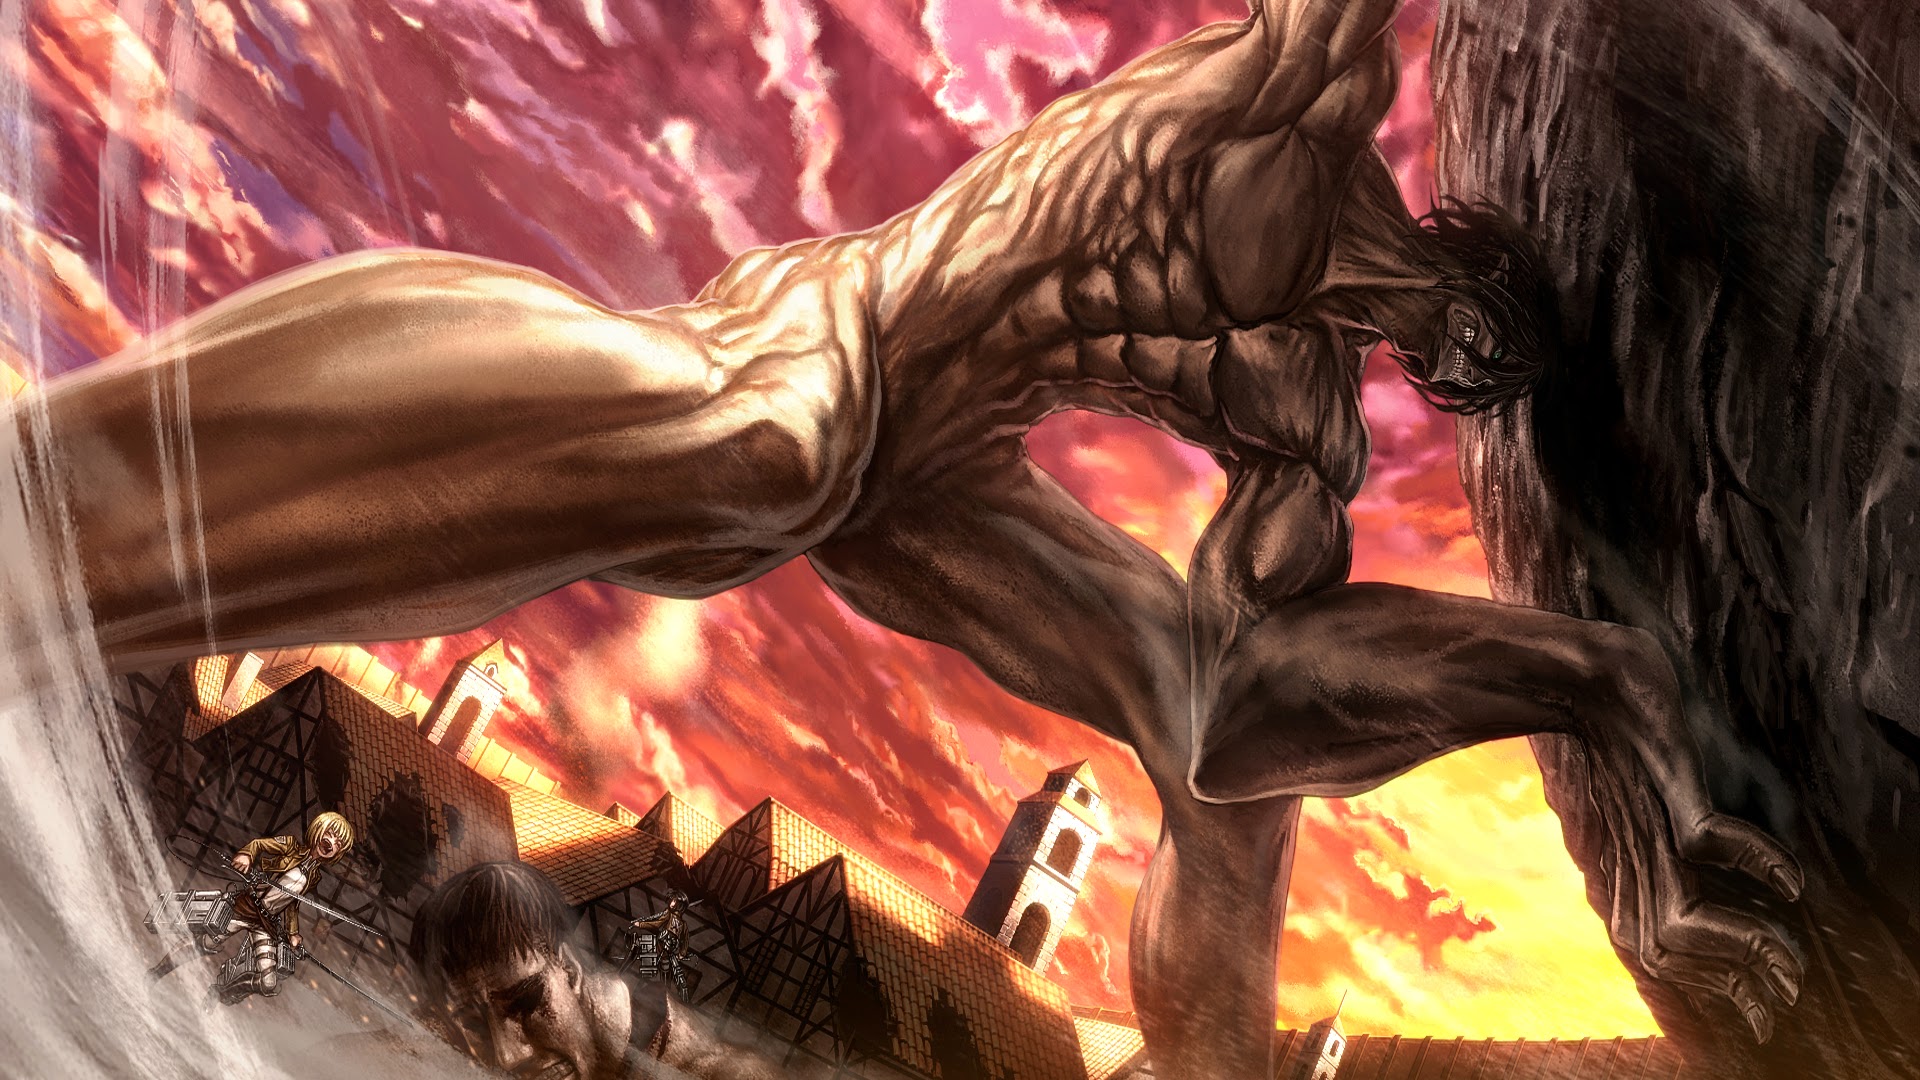 Rogue Titan Attack On Shingeki No Kyojin Anime HD Wallpaper